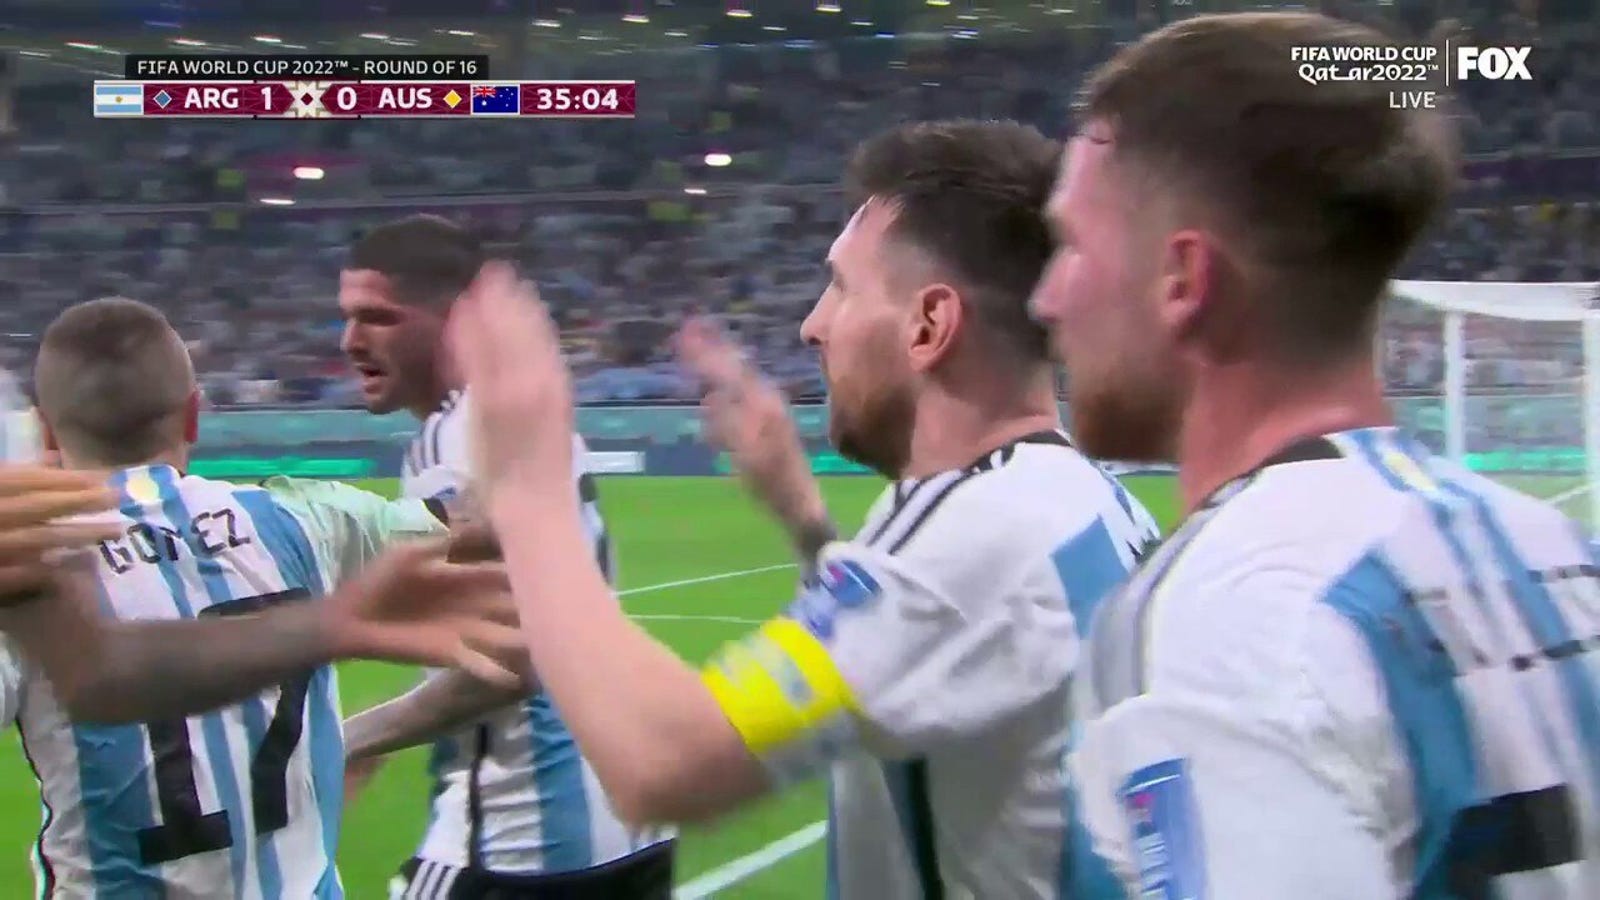 Argentina's Lionel Messi scores goal vs. Australia in 35'